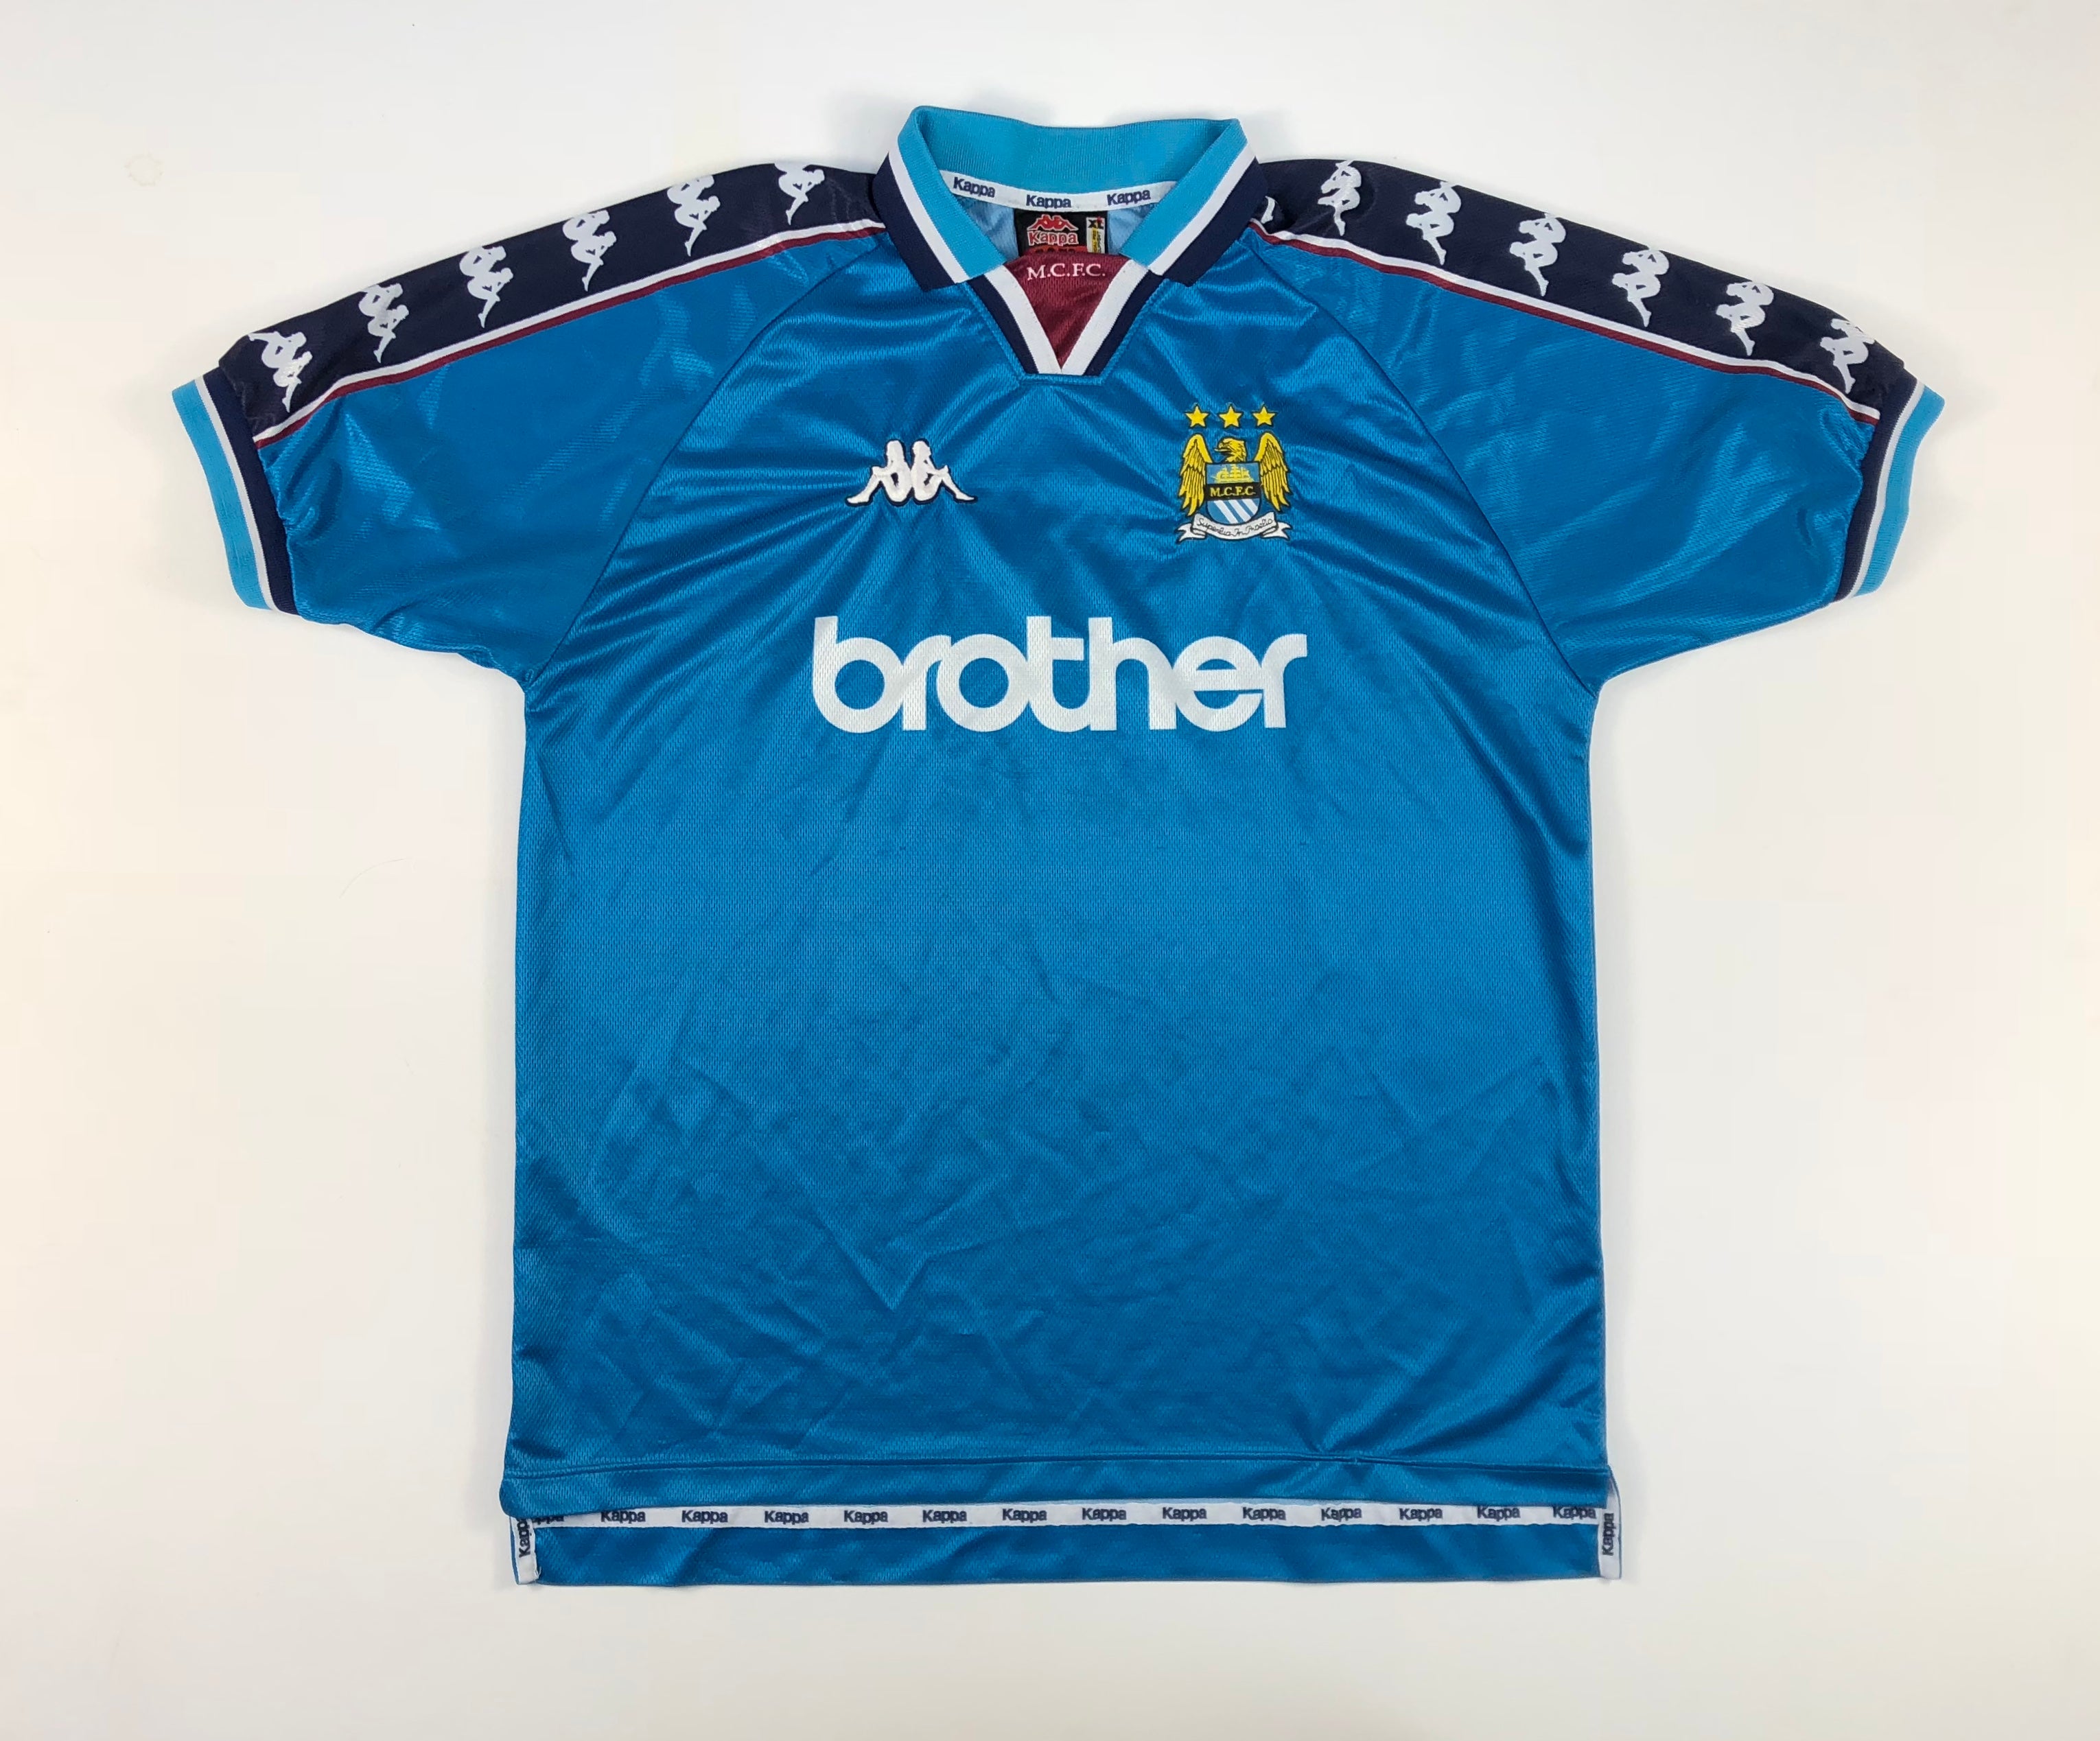 Man City – Classic Shirts ZA